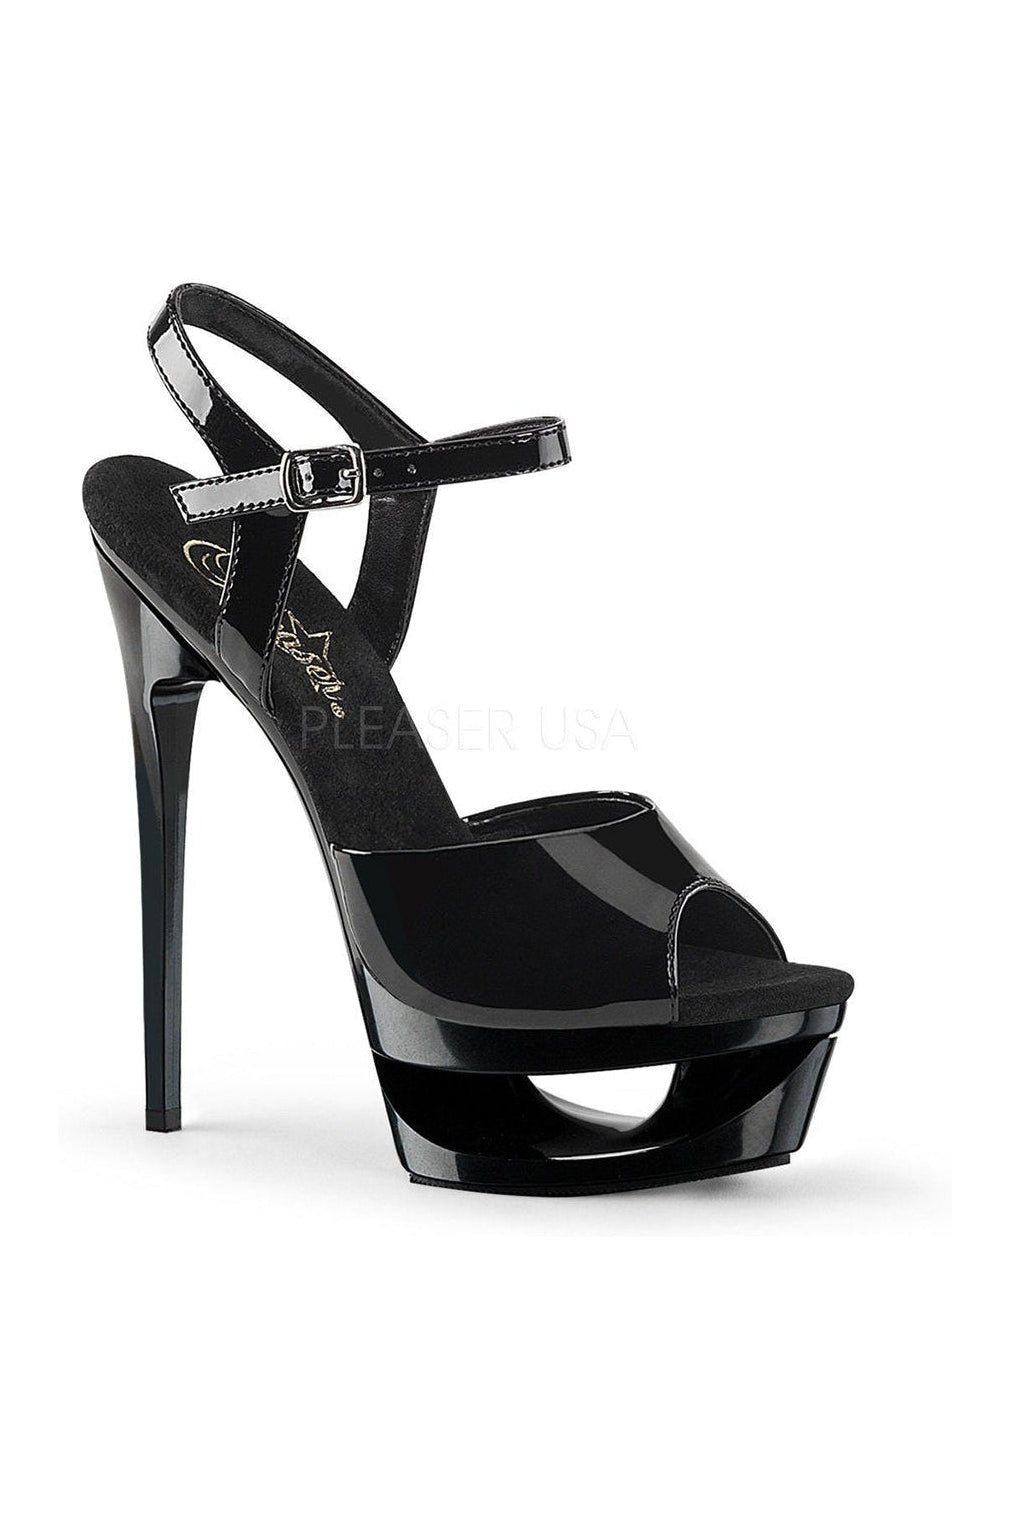 ECLIPSE-609 Platform Sandal | Black Patent-Pleaser-Black-Sandals-SEXYSHOES.COM